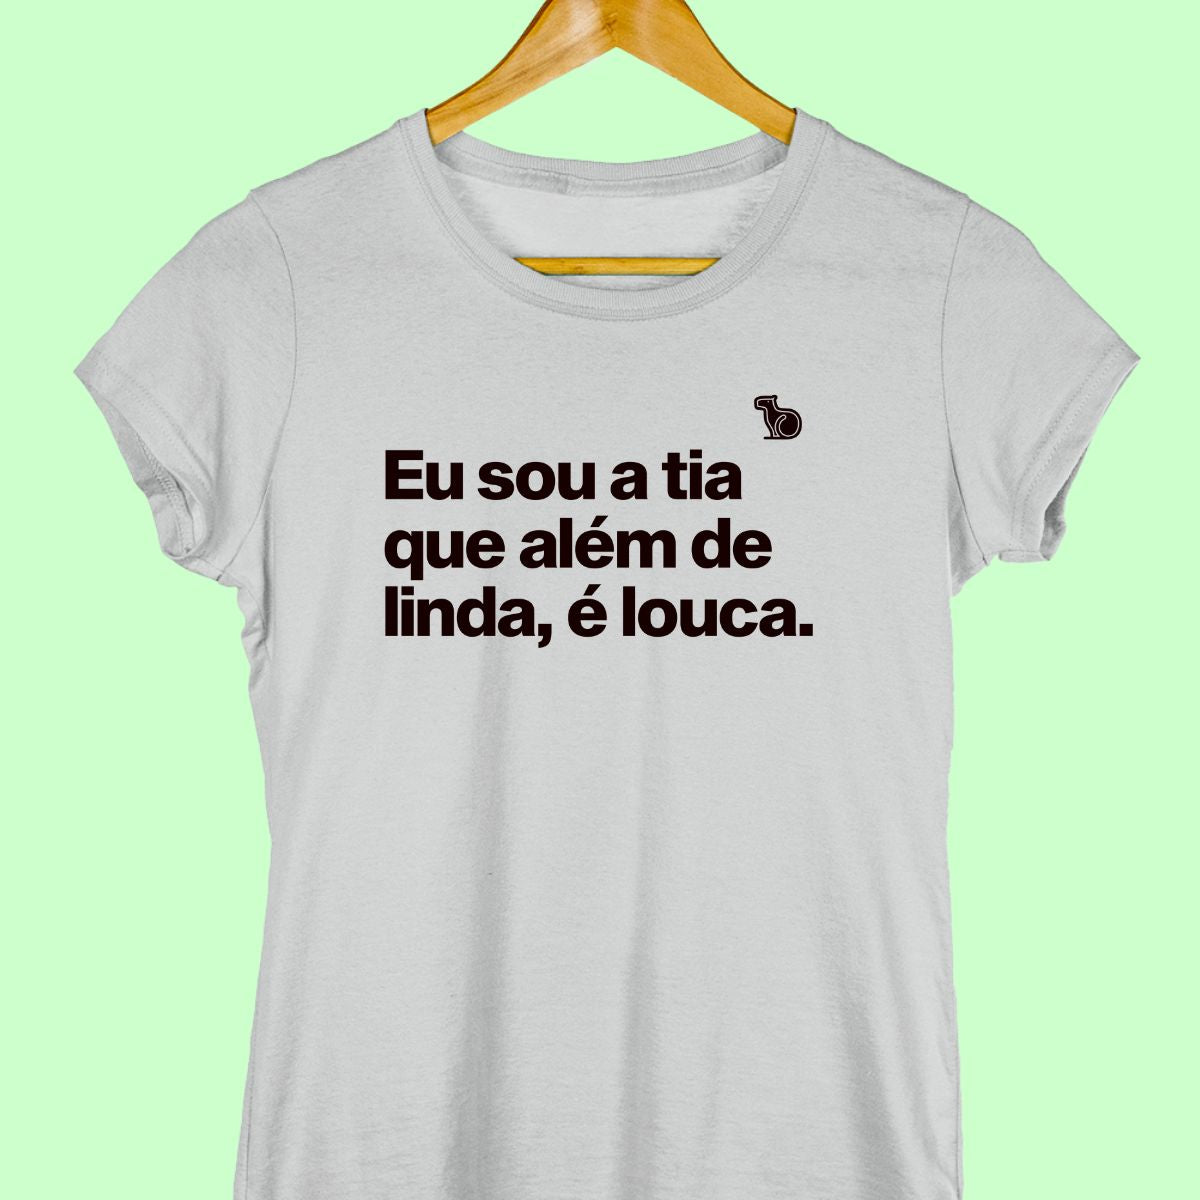 Camiseta com a frase "Eu sou a tia que além de linda, é louca." Feminina cinza.